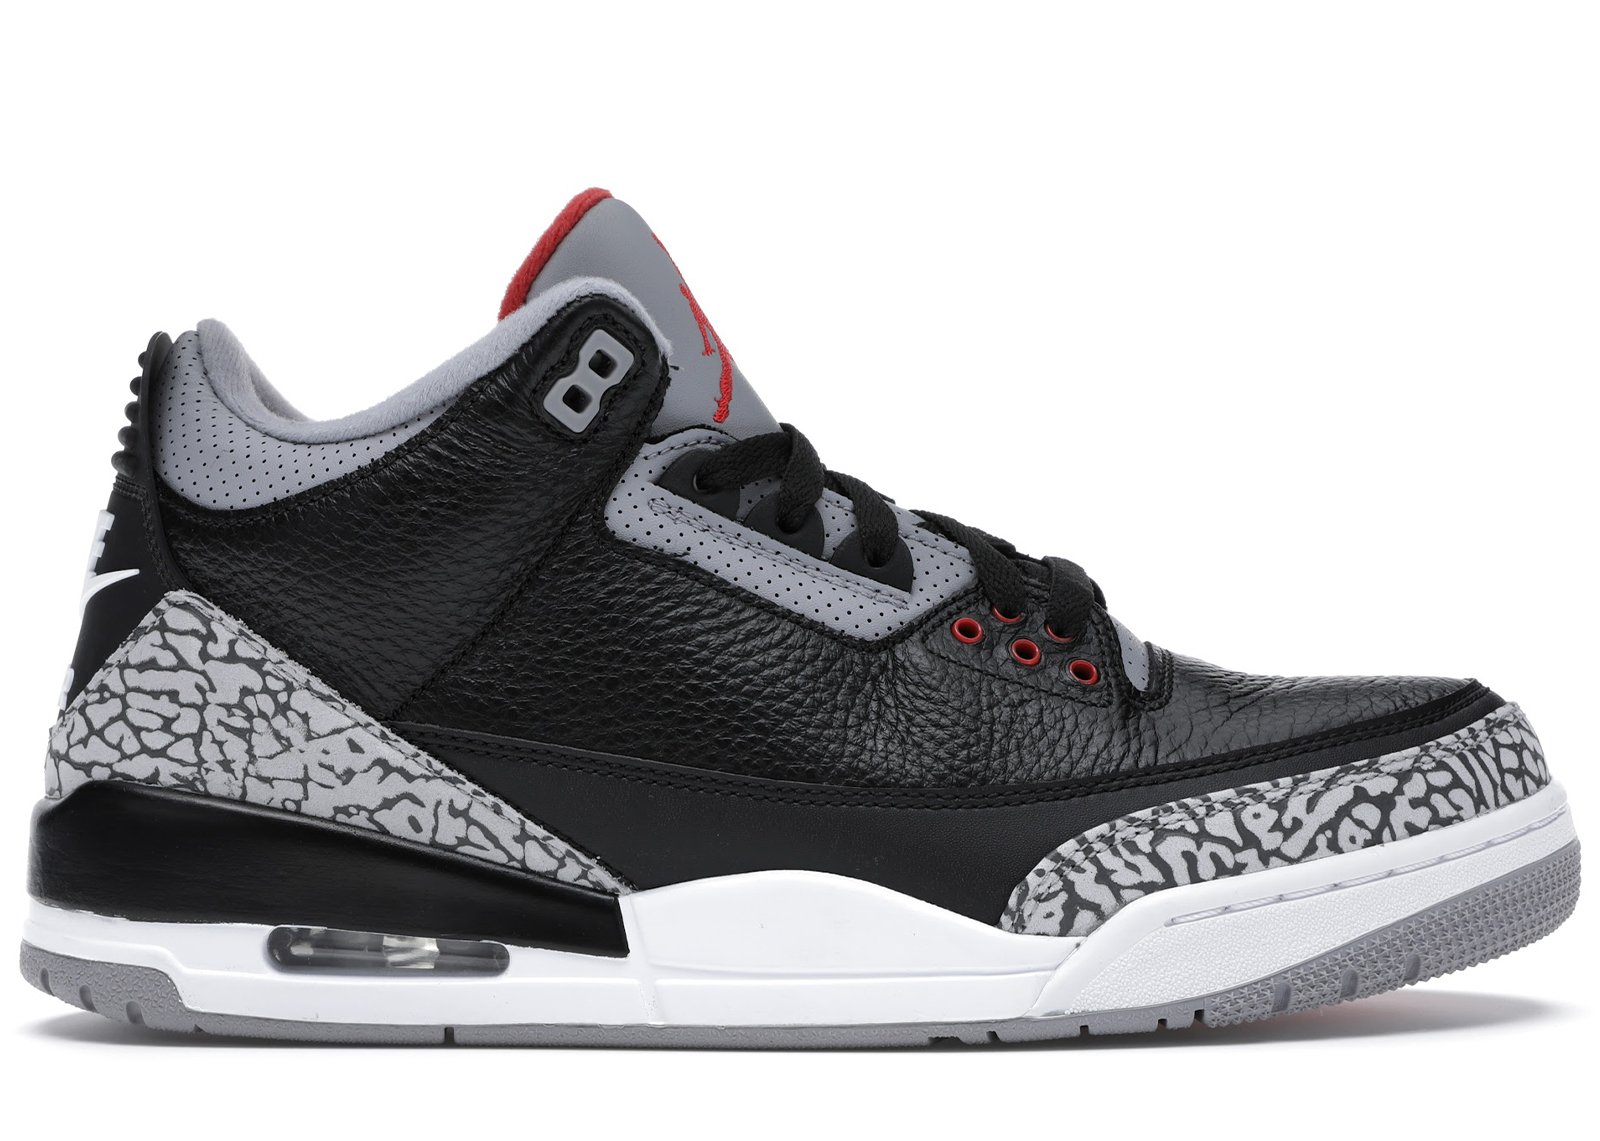 Jordan 3 Retro Black Cement (2018) sneakers